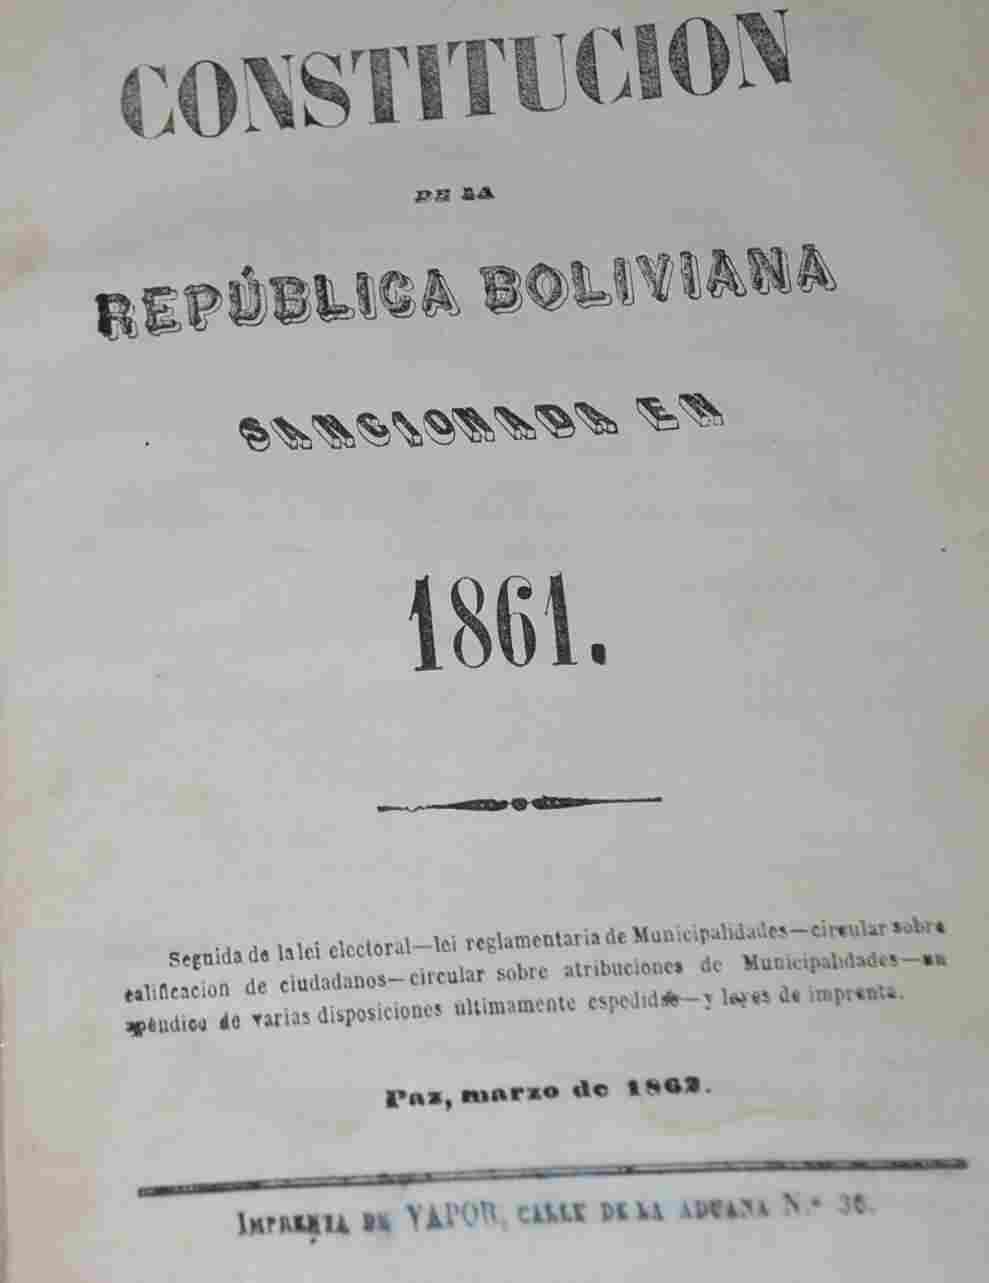 Constitución de la República Boliviana